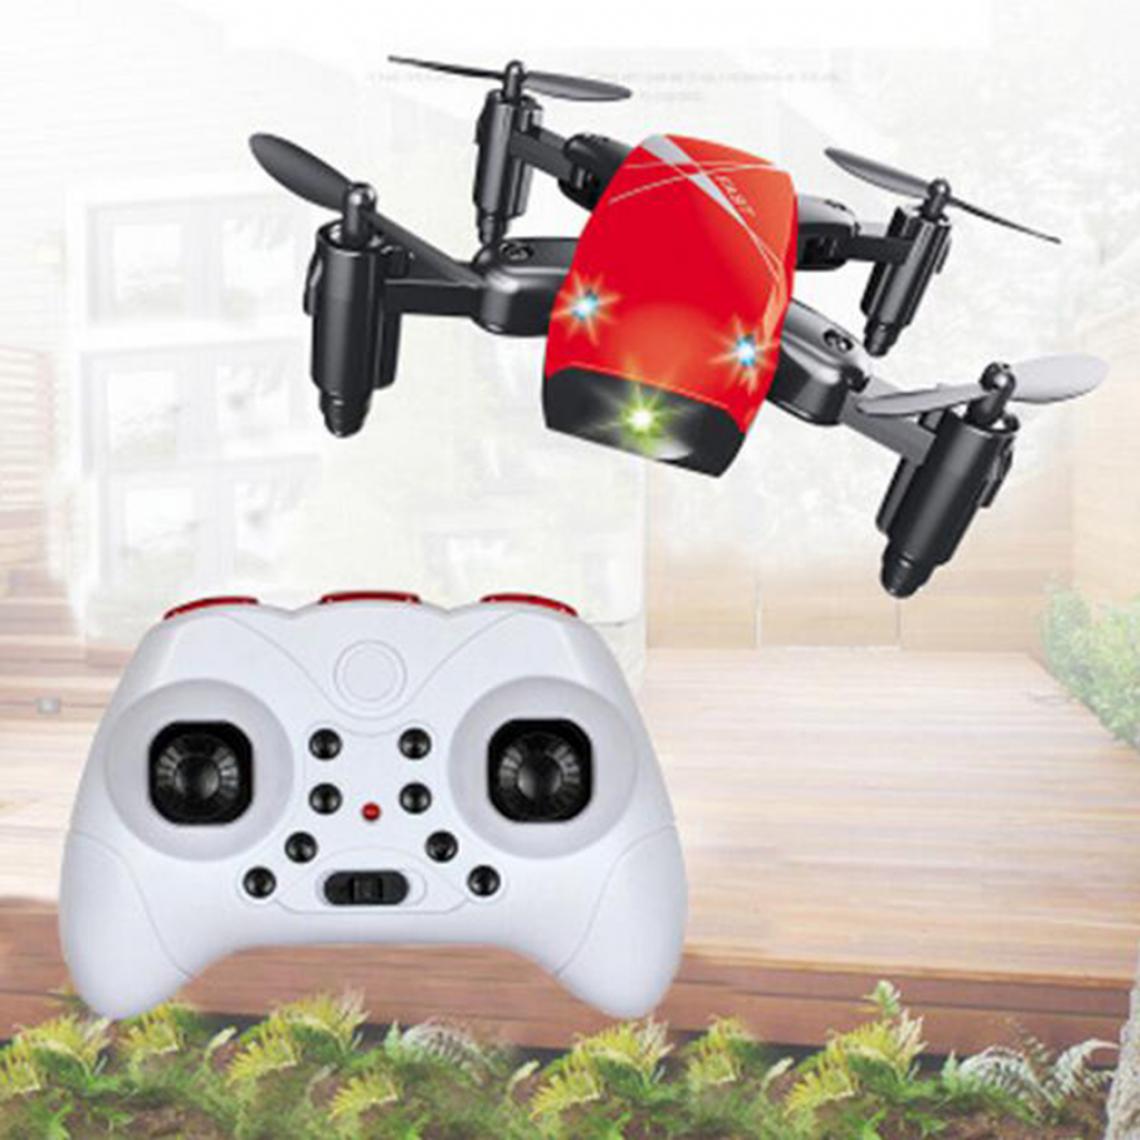 marque generique - Mini Drone Quadricoptère De Poche Pliable Pour Enfants Débutants Rouge Avec Caméra - Voitures